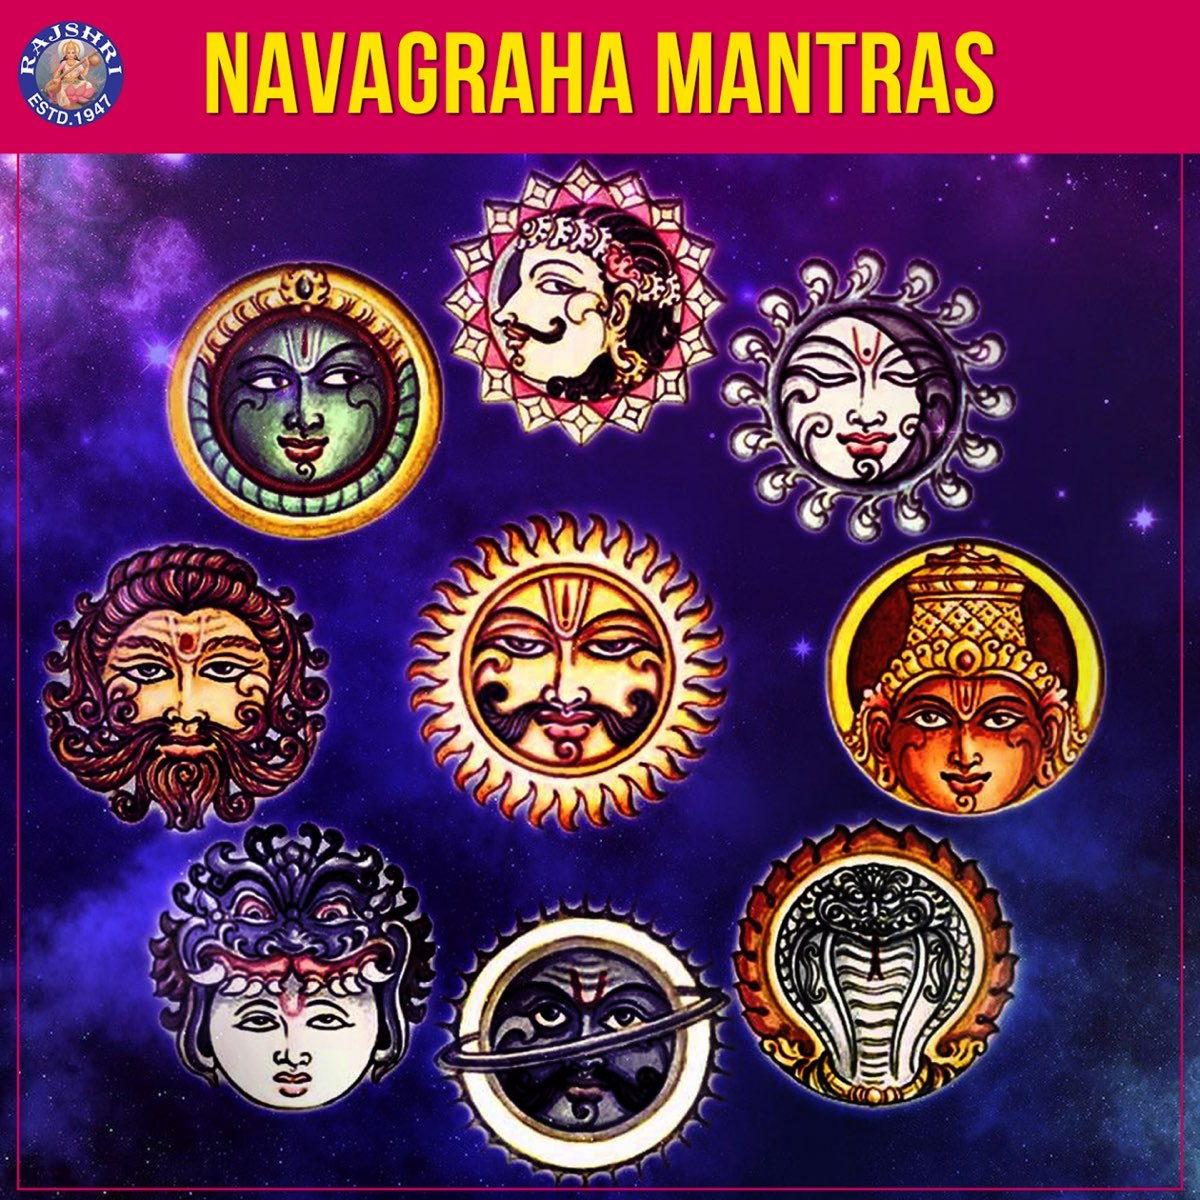 Navagraha Mantras by Ketan Patwardhan on Apple Music